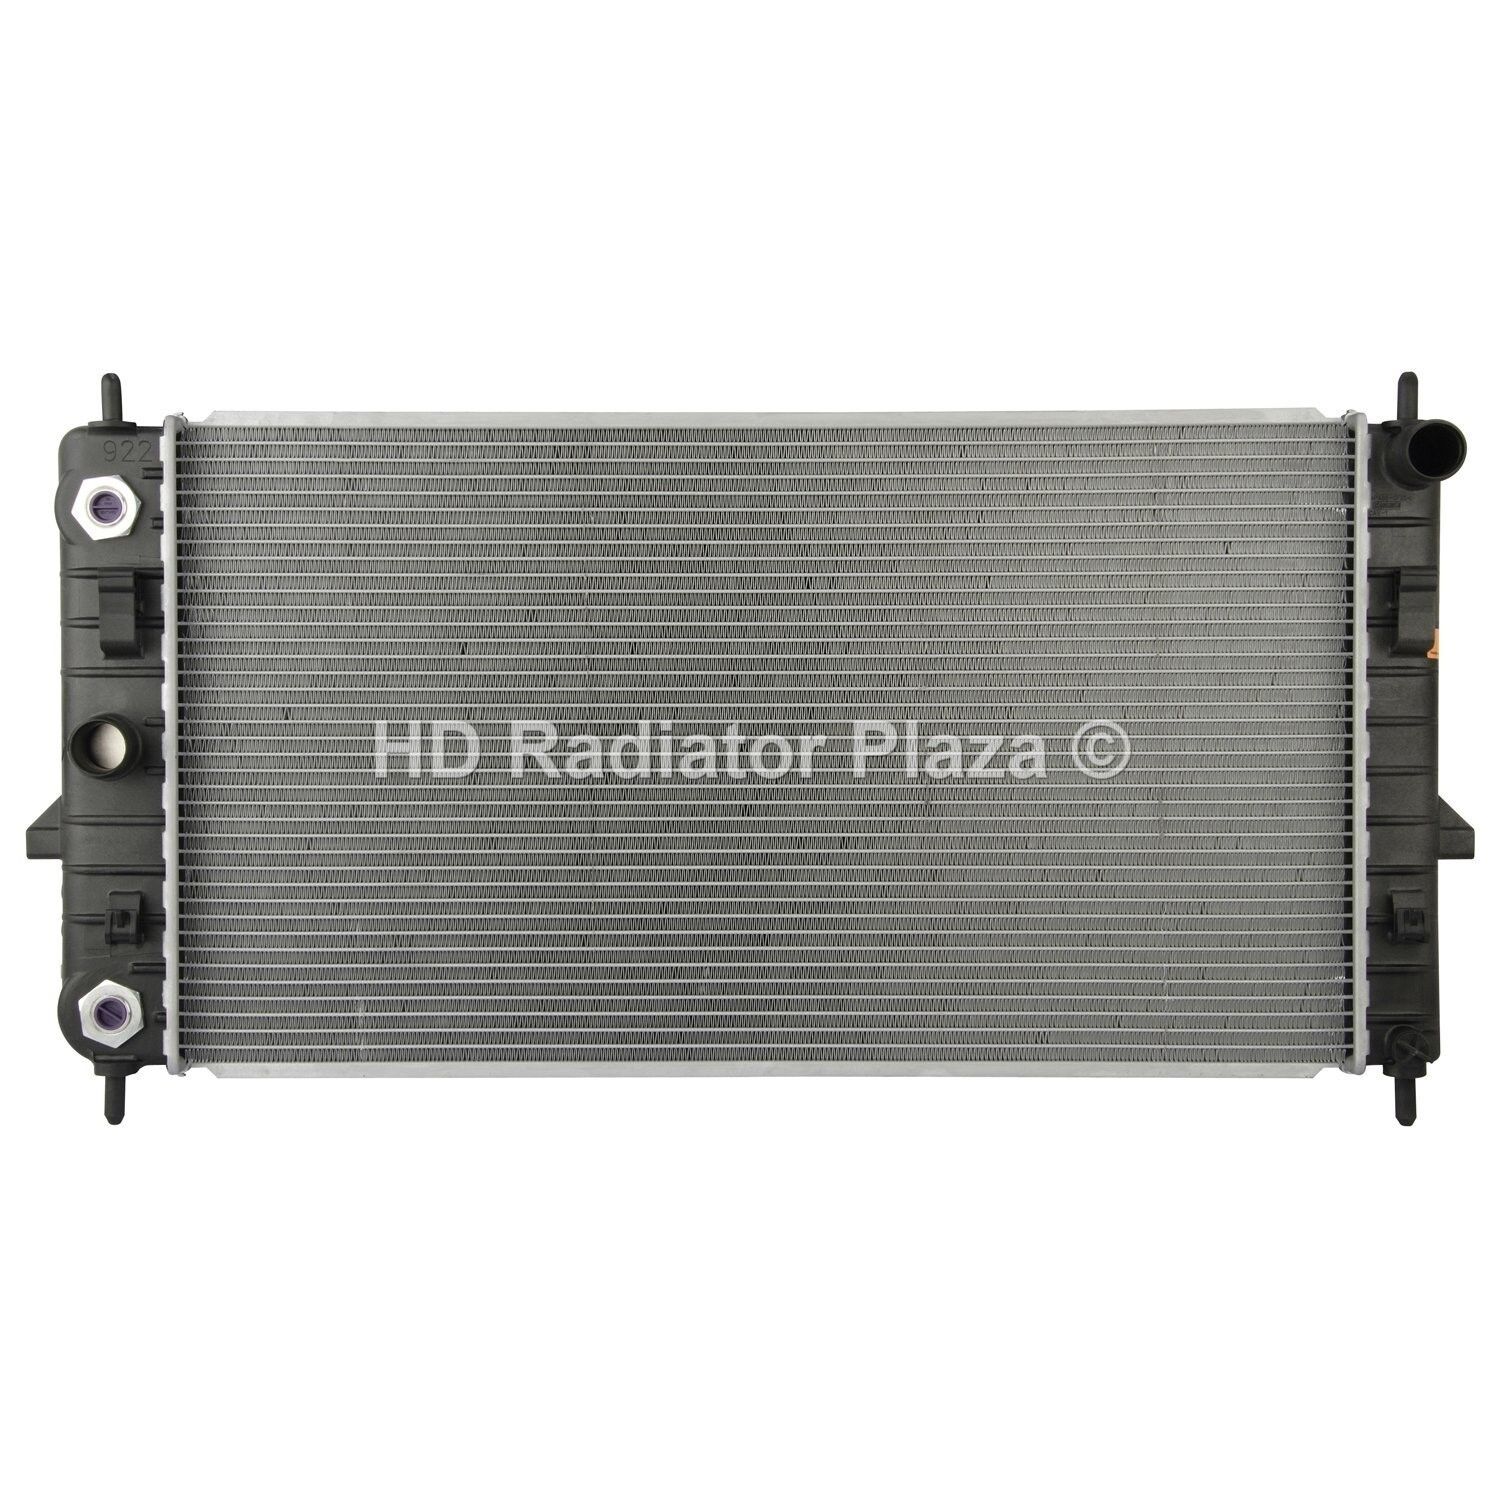 Radiator For 05-10 Cobalt 03-07 Ion 07-10 G5 2.2L 2.4L L4 4 Cylinder New